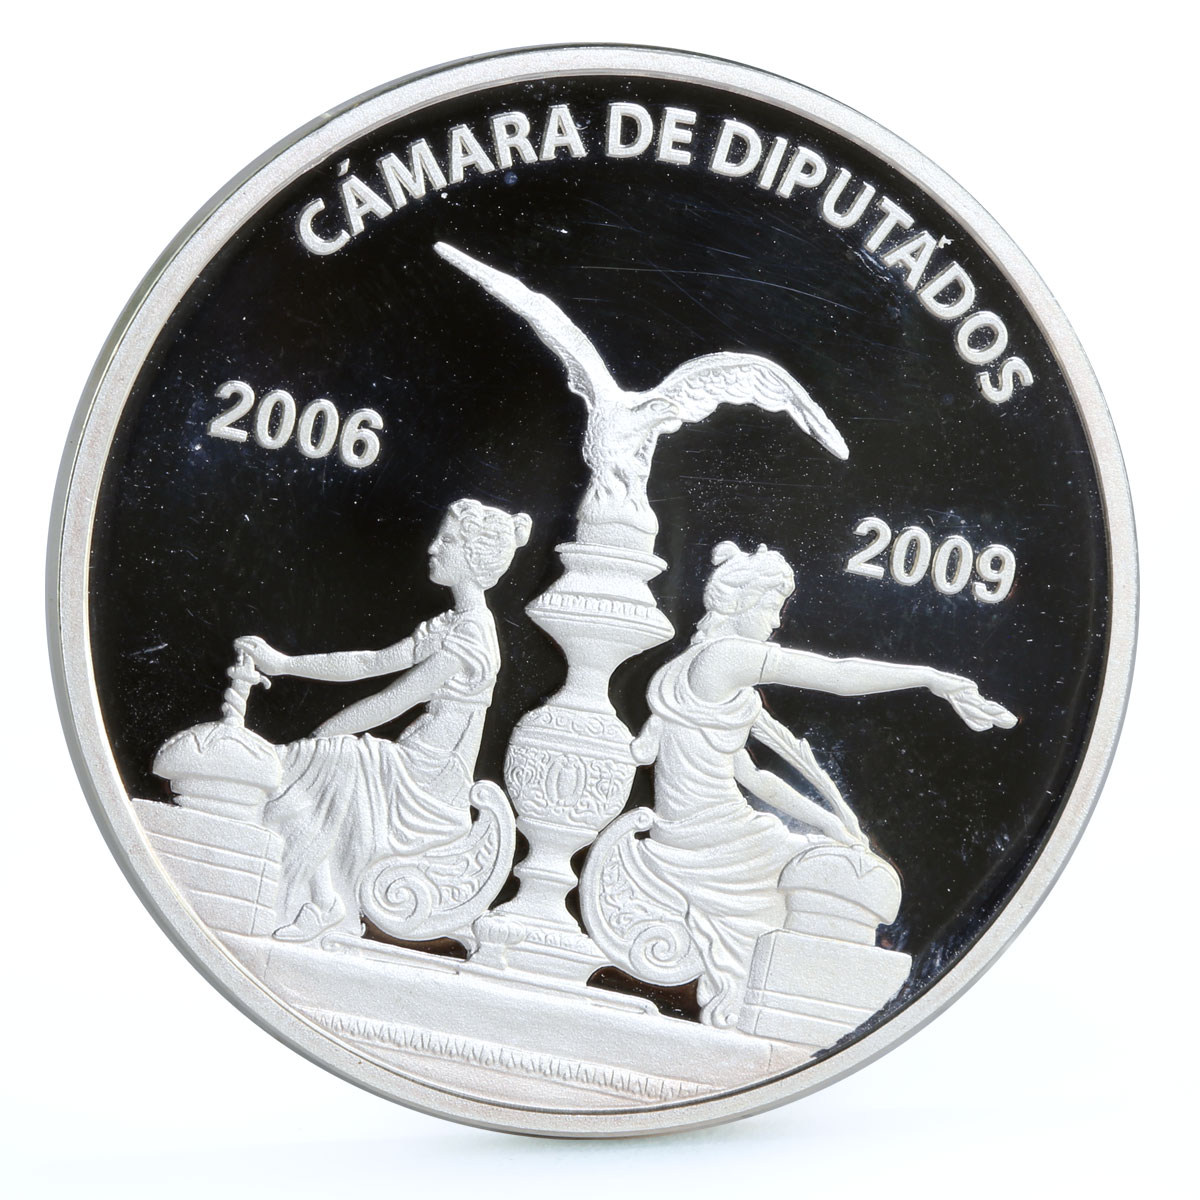 Mexico Camara de Diputados Statues Eagle Bird proof silver medal token coin 2009